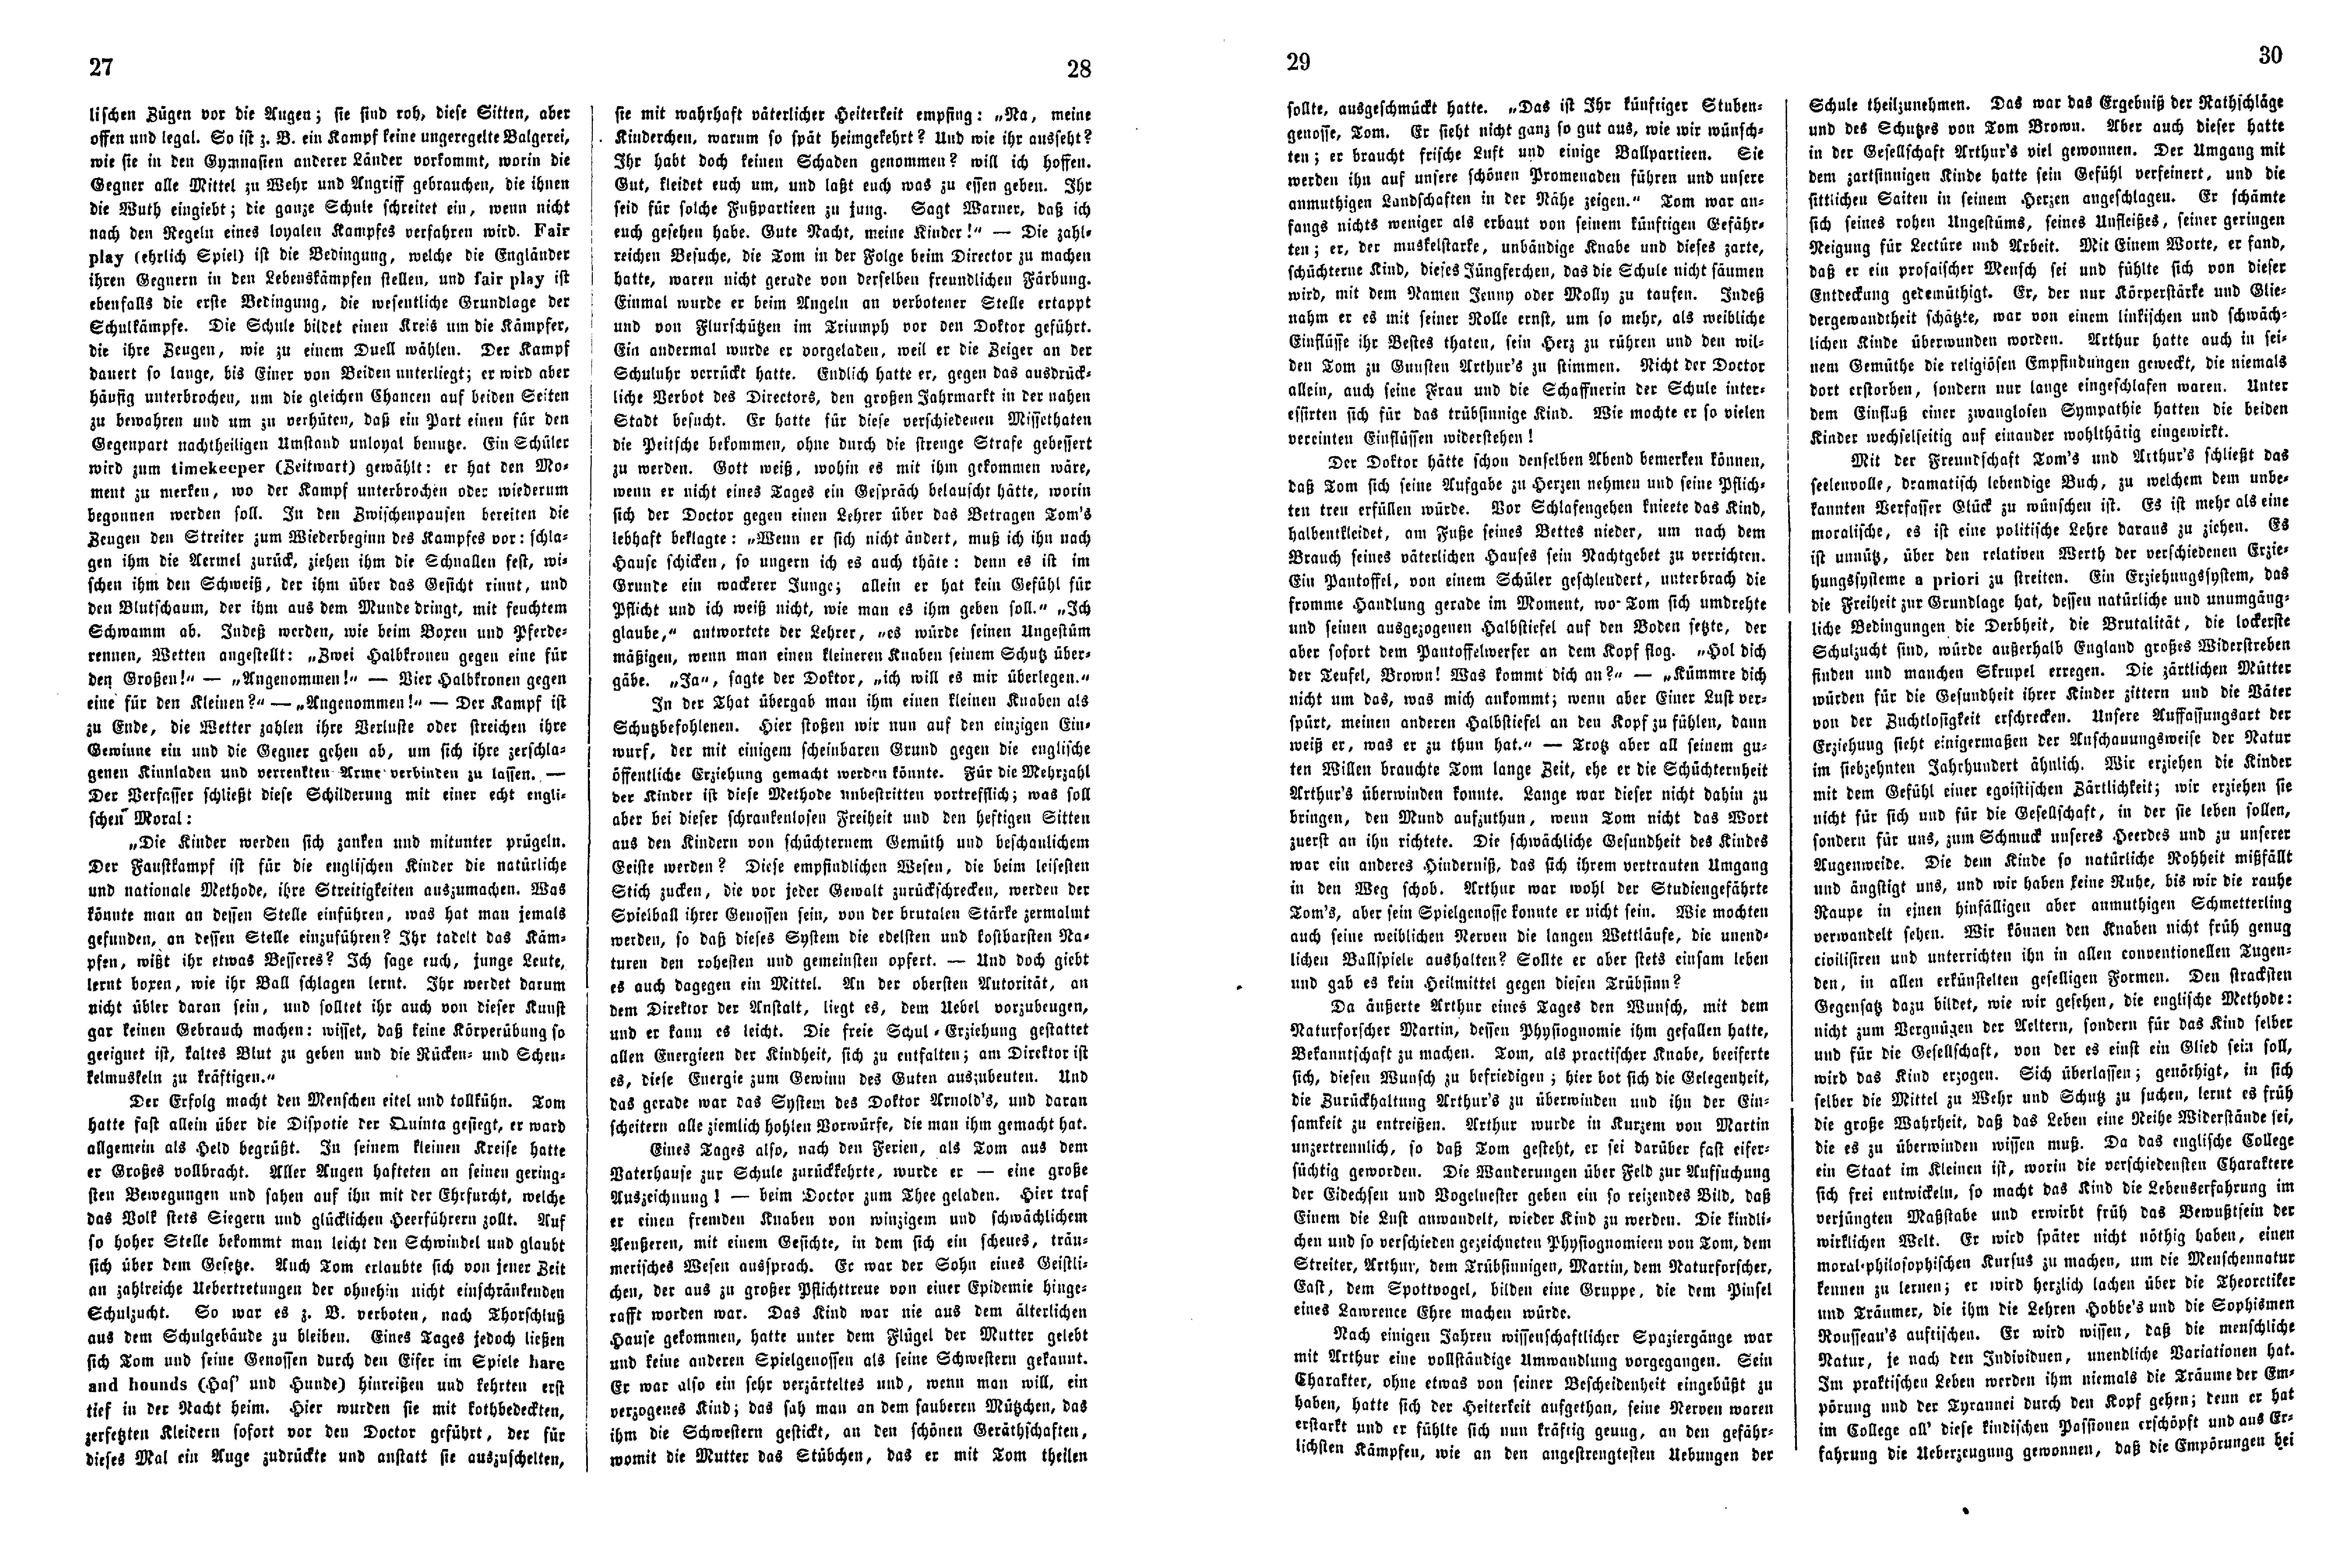 Das Inland [26] (1861) | 11. (27-30) Основной текст